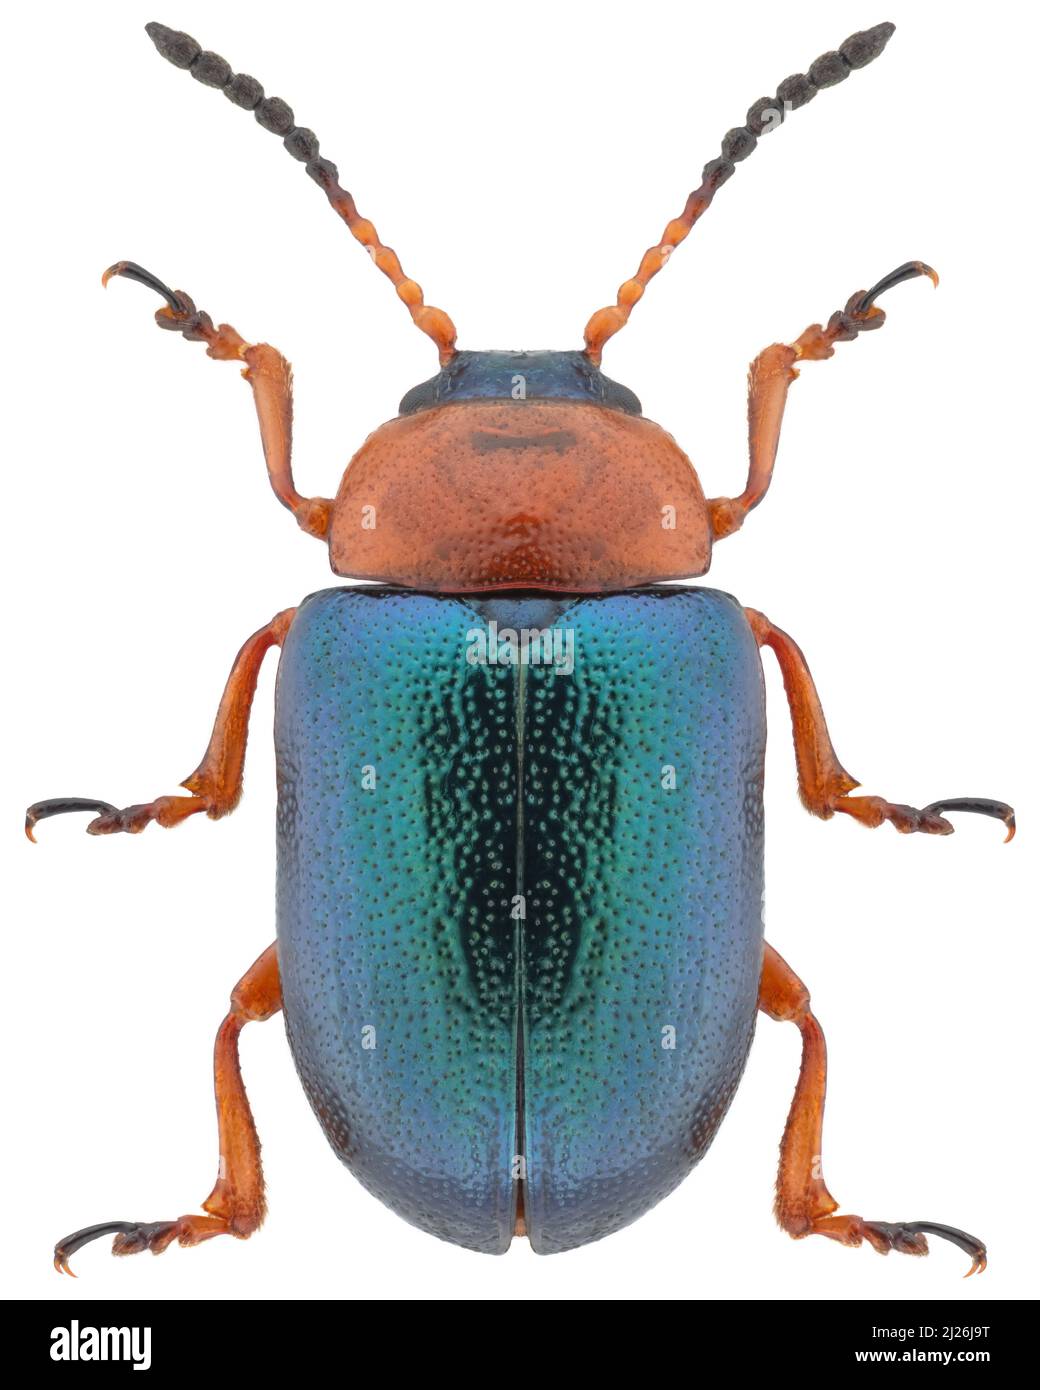 Leaf beetle species Gastrophysa polygoni, trivial name: knotweed leaf beetle. Stock Photo